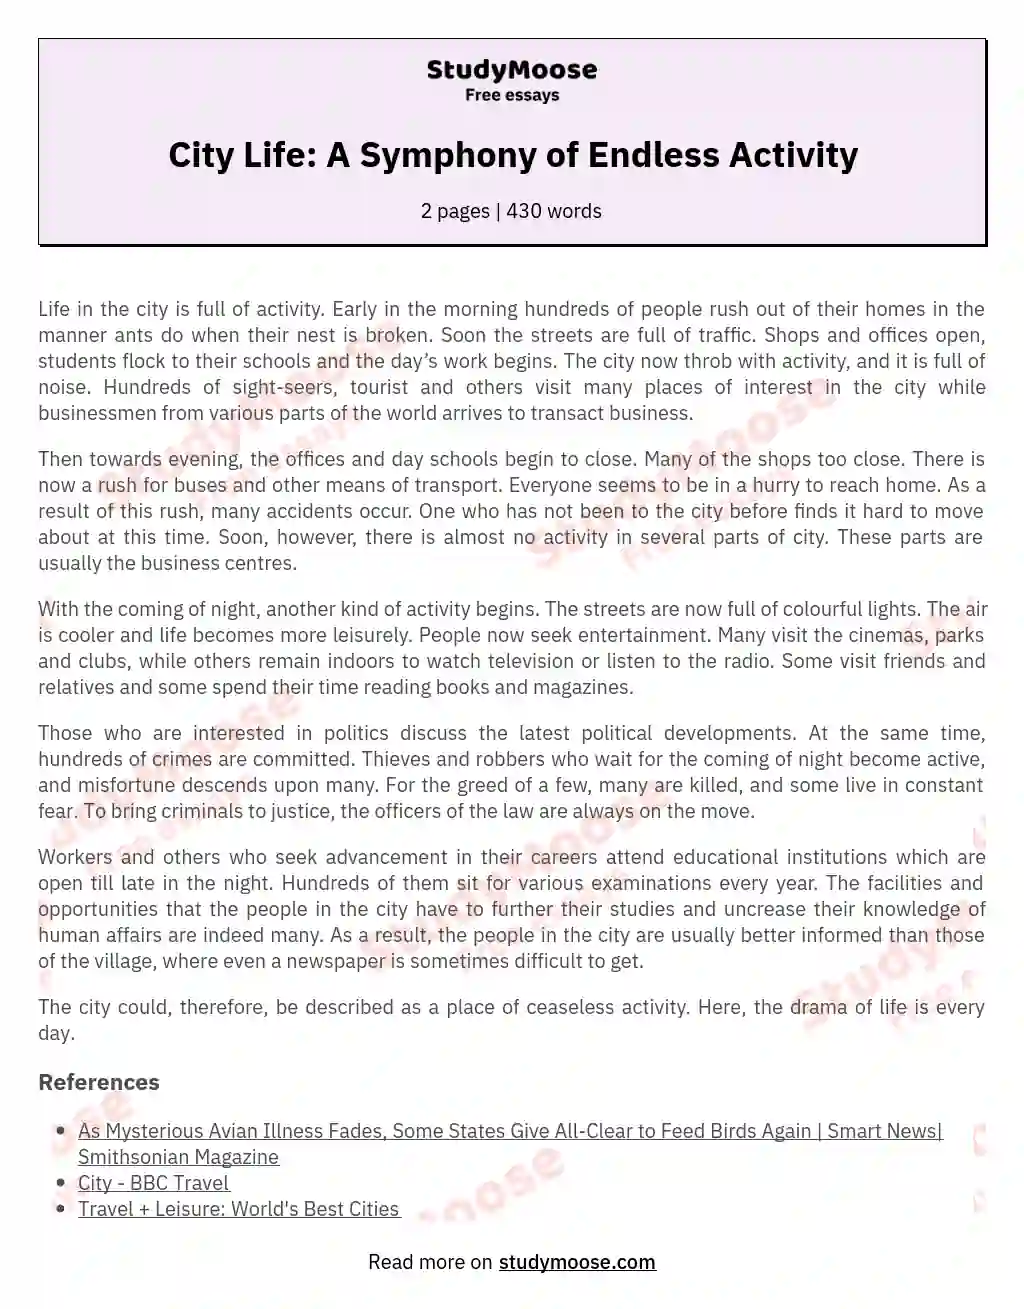 City Life: A Symphony of Endless Activity essay